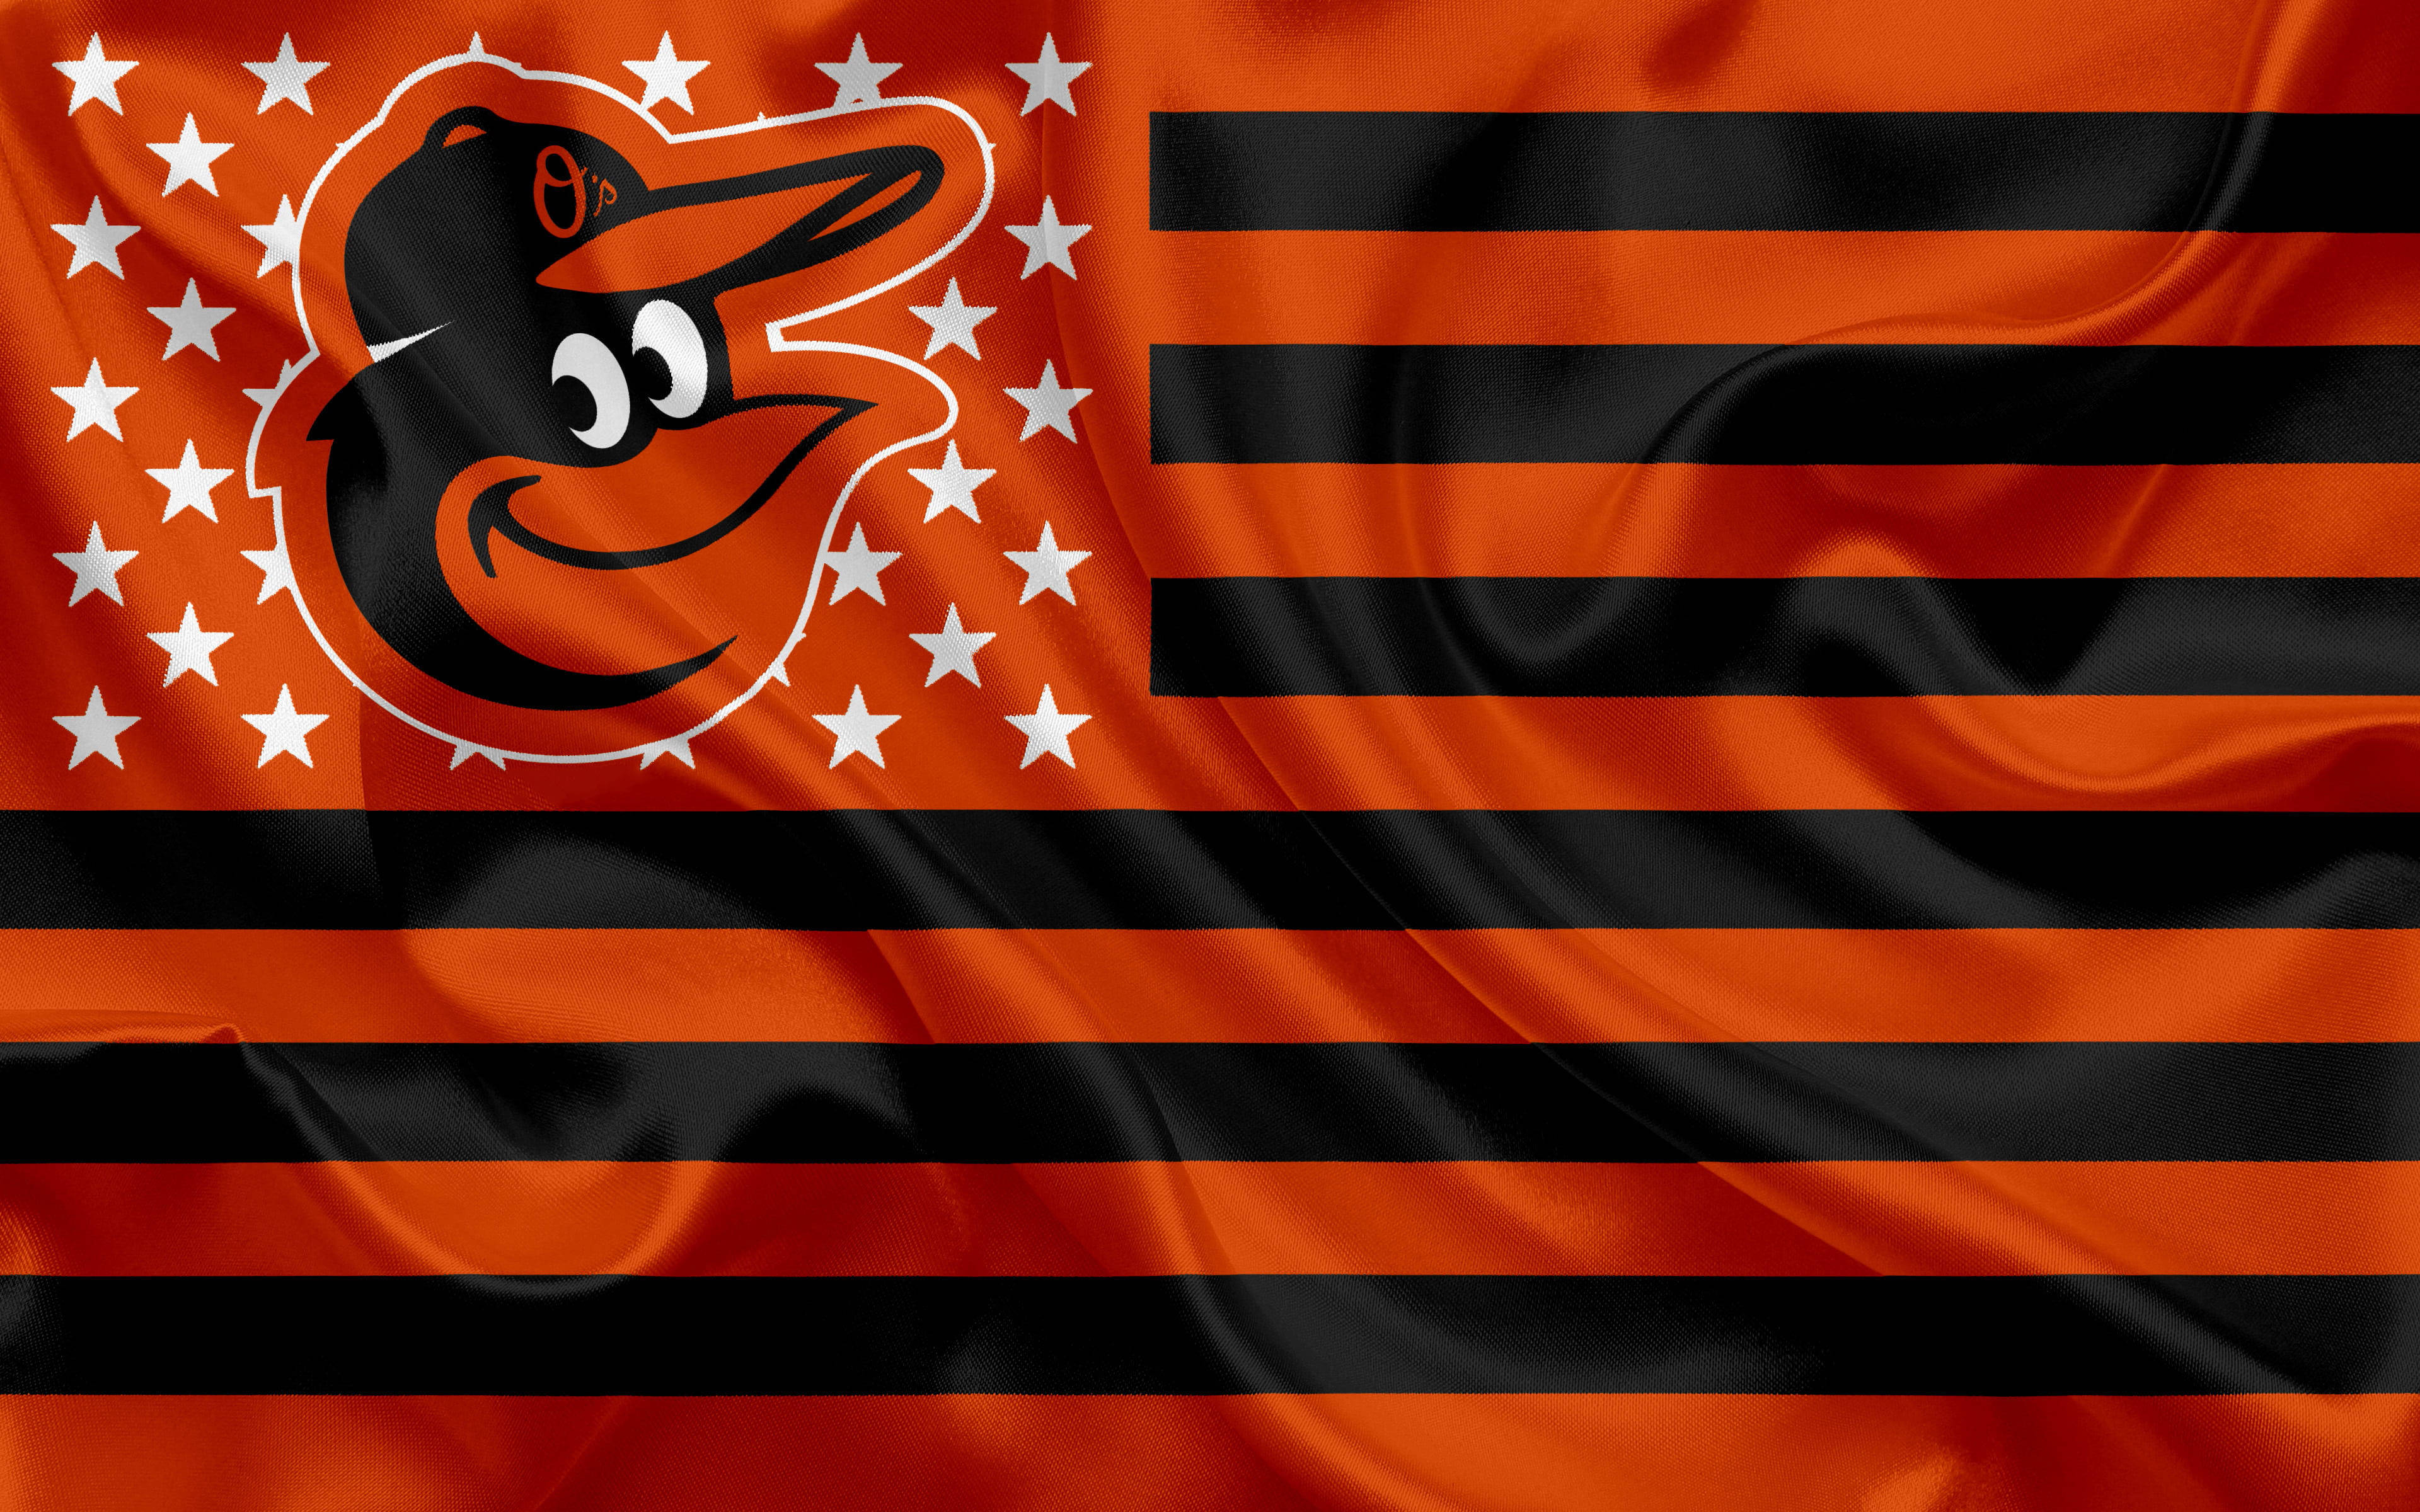 Baltimore Orioles Creative Flag